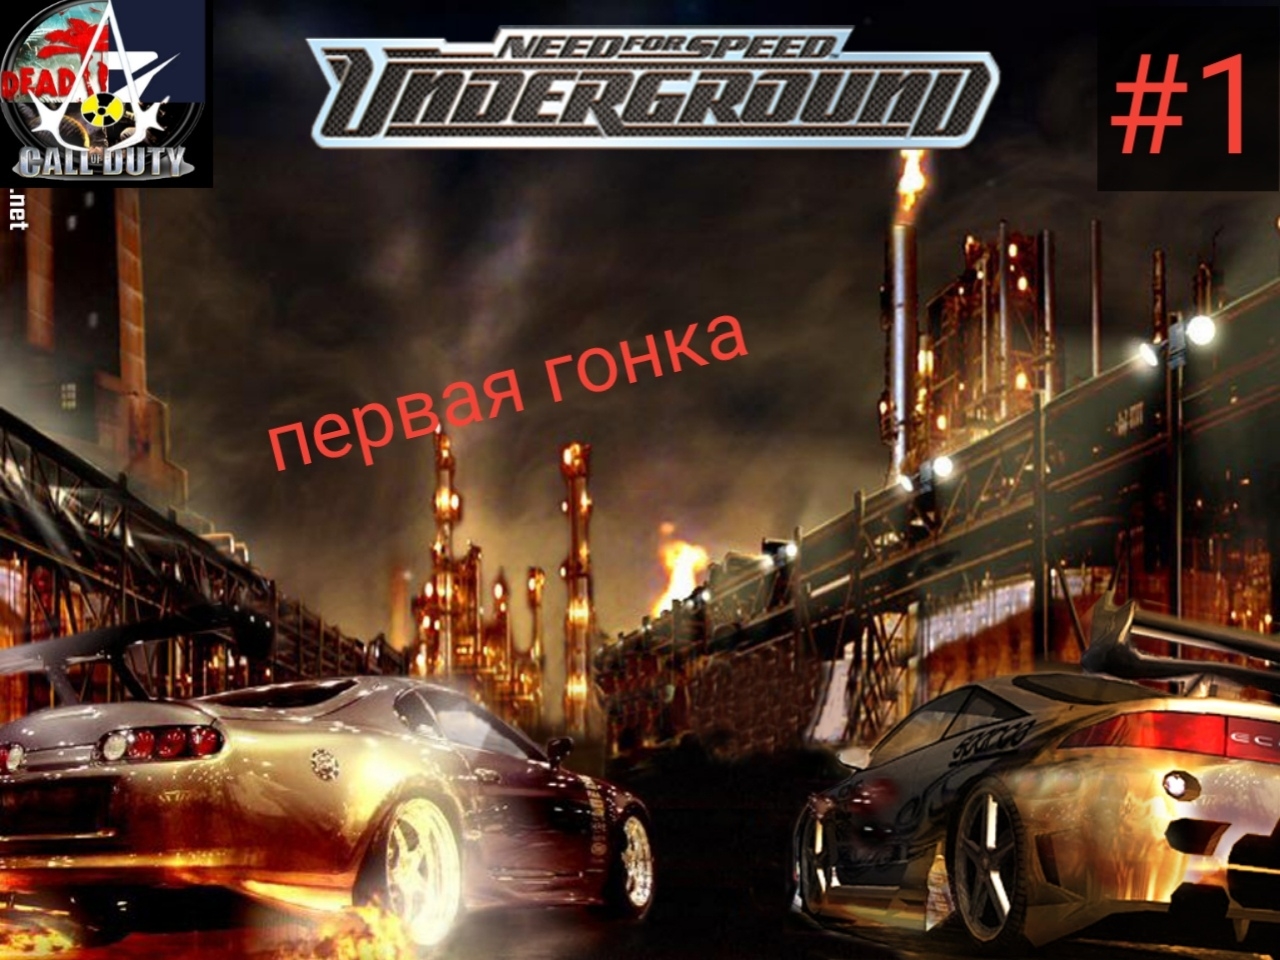 Песни из игры need for speed. Need for Speed: Underground 1, 2. Гонки need for Speed Underground. Need for Speed андеграунд 1. Нфс играандеграу игра андеграунд.